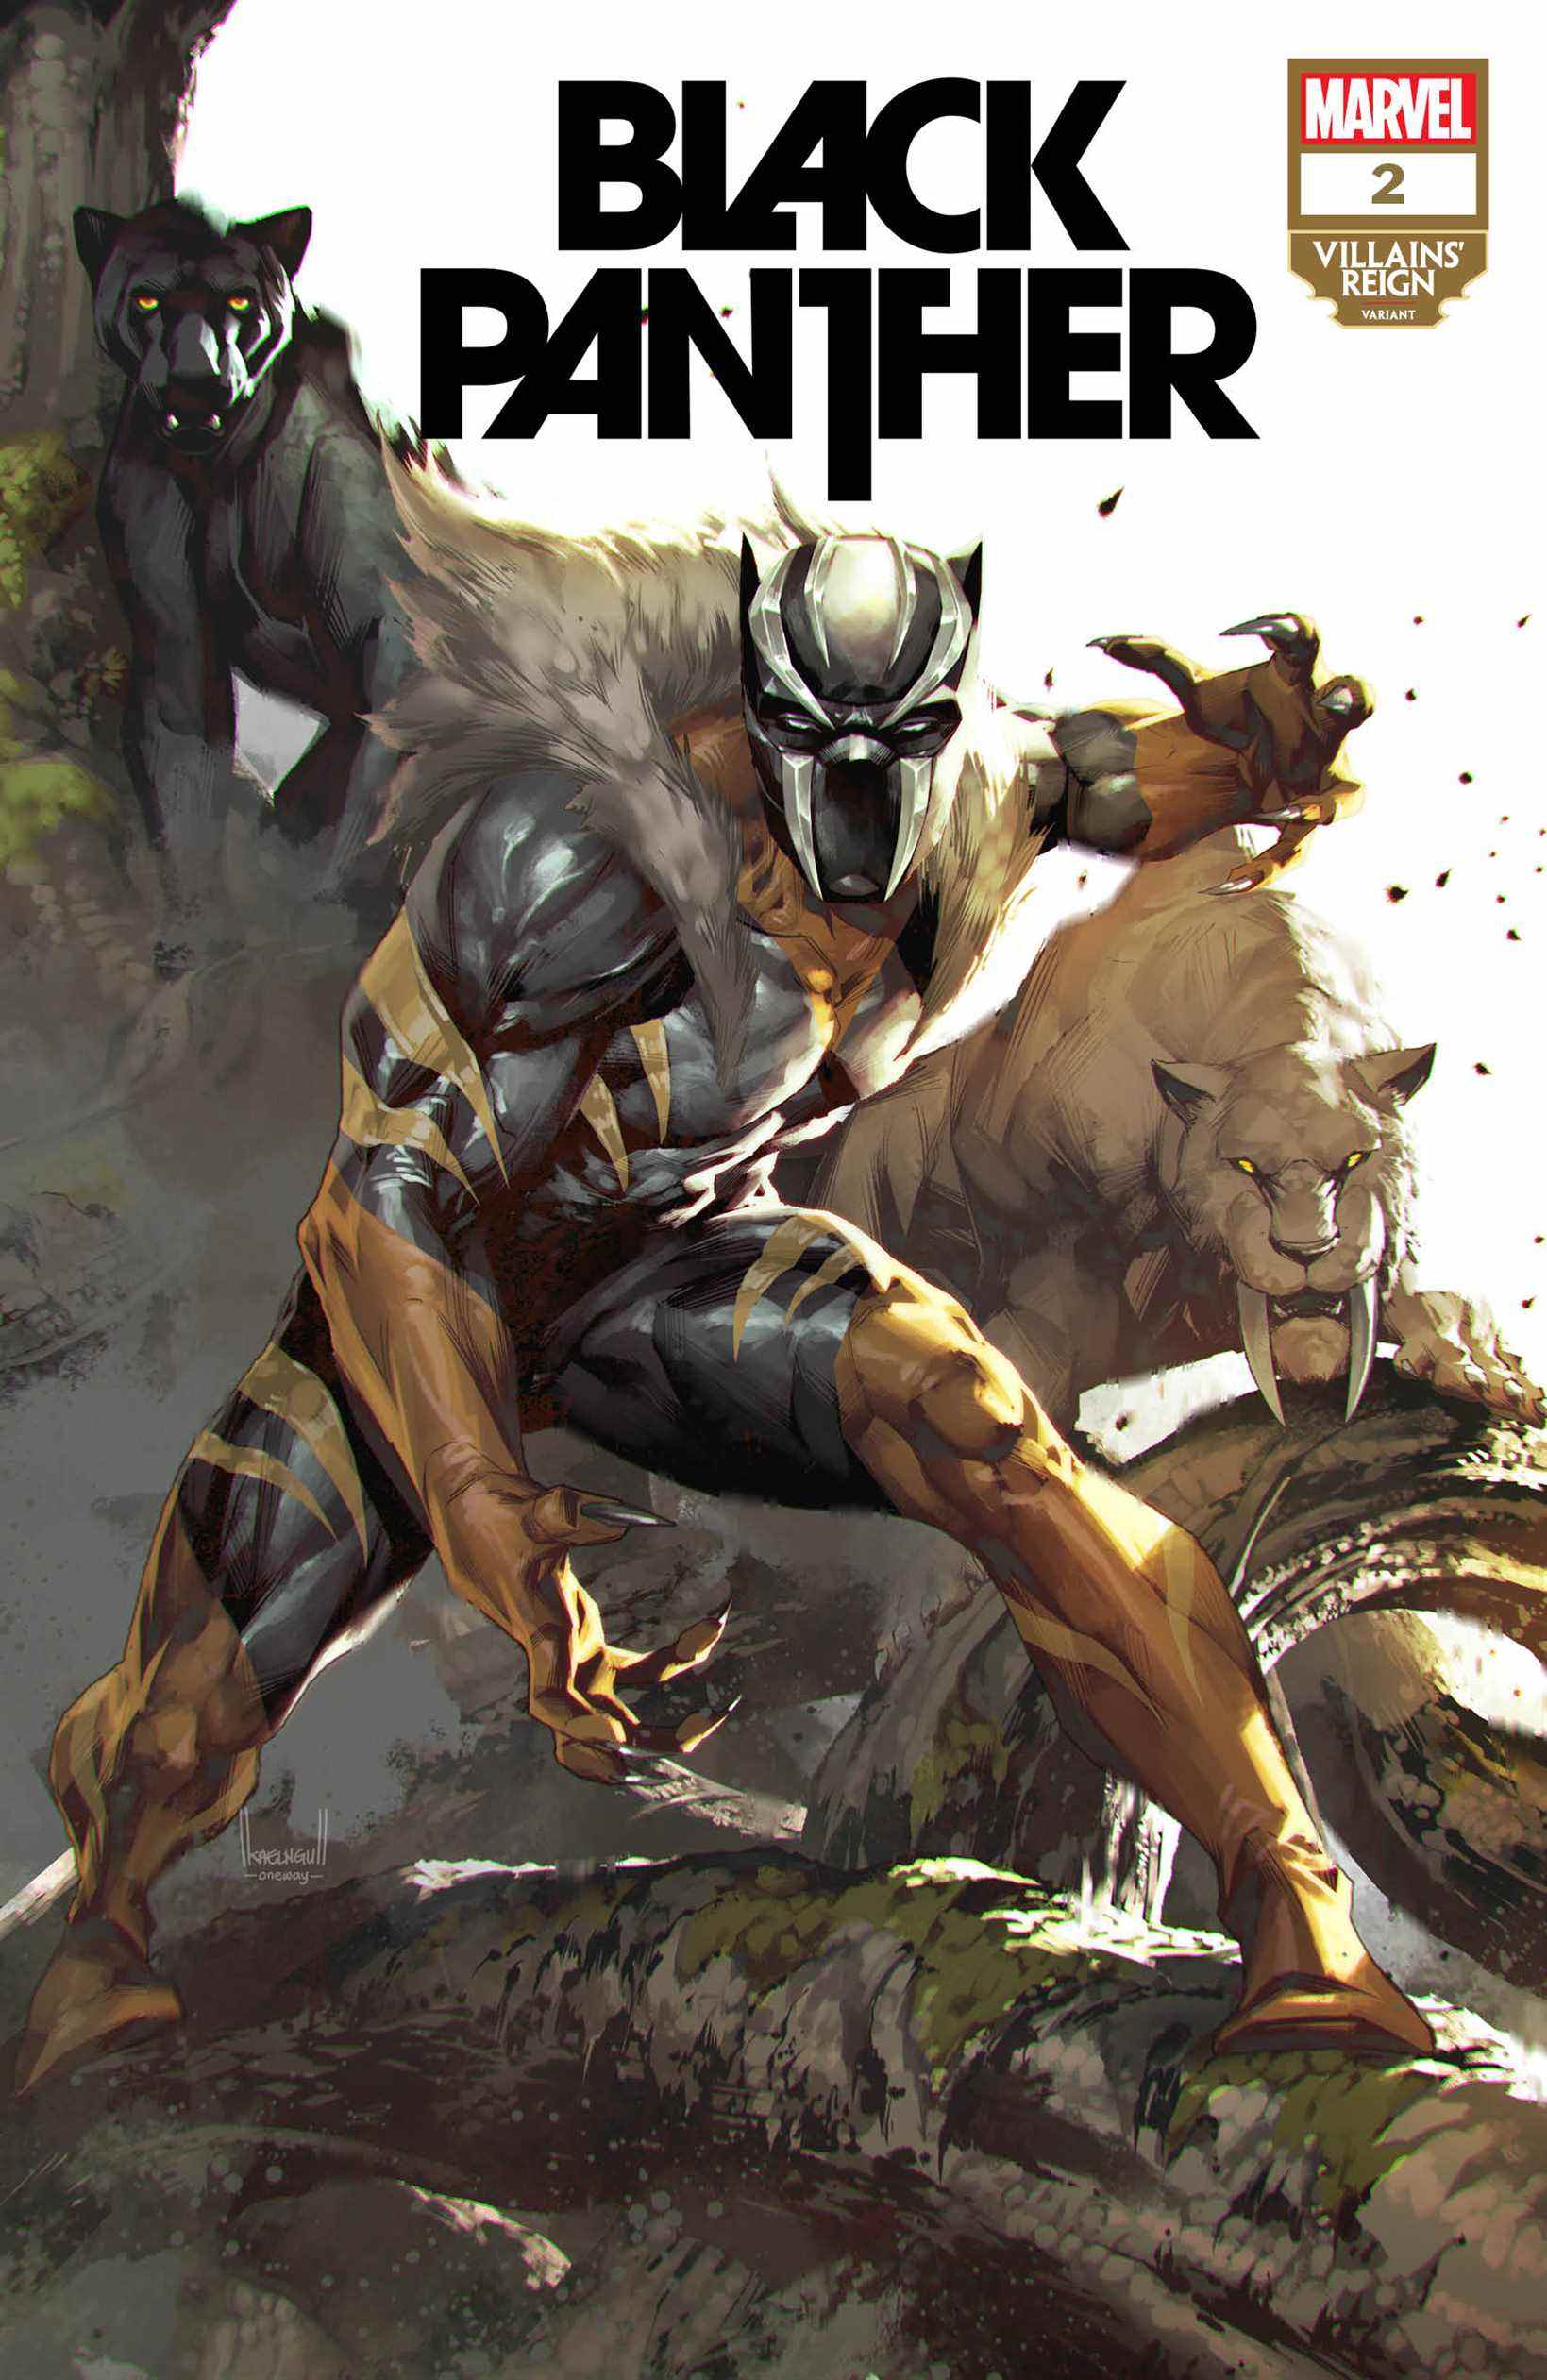 Couvertures des variantes de Marvel's Villains' Reign